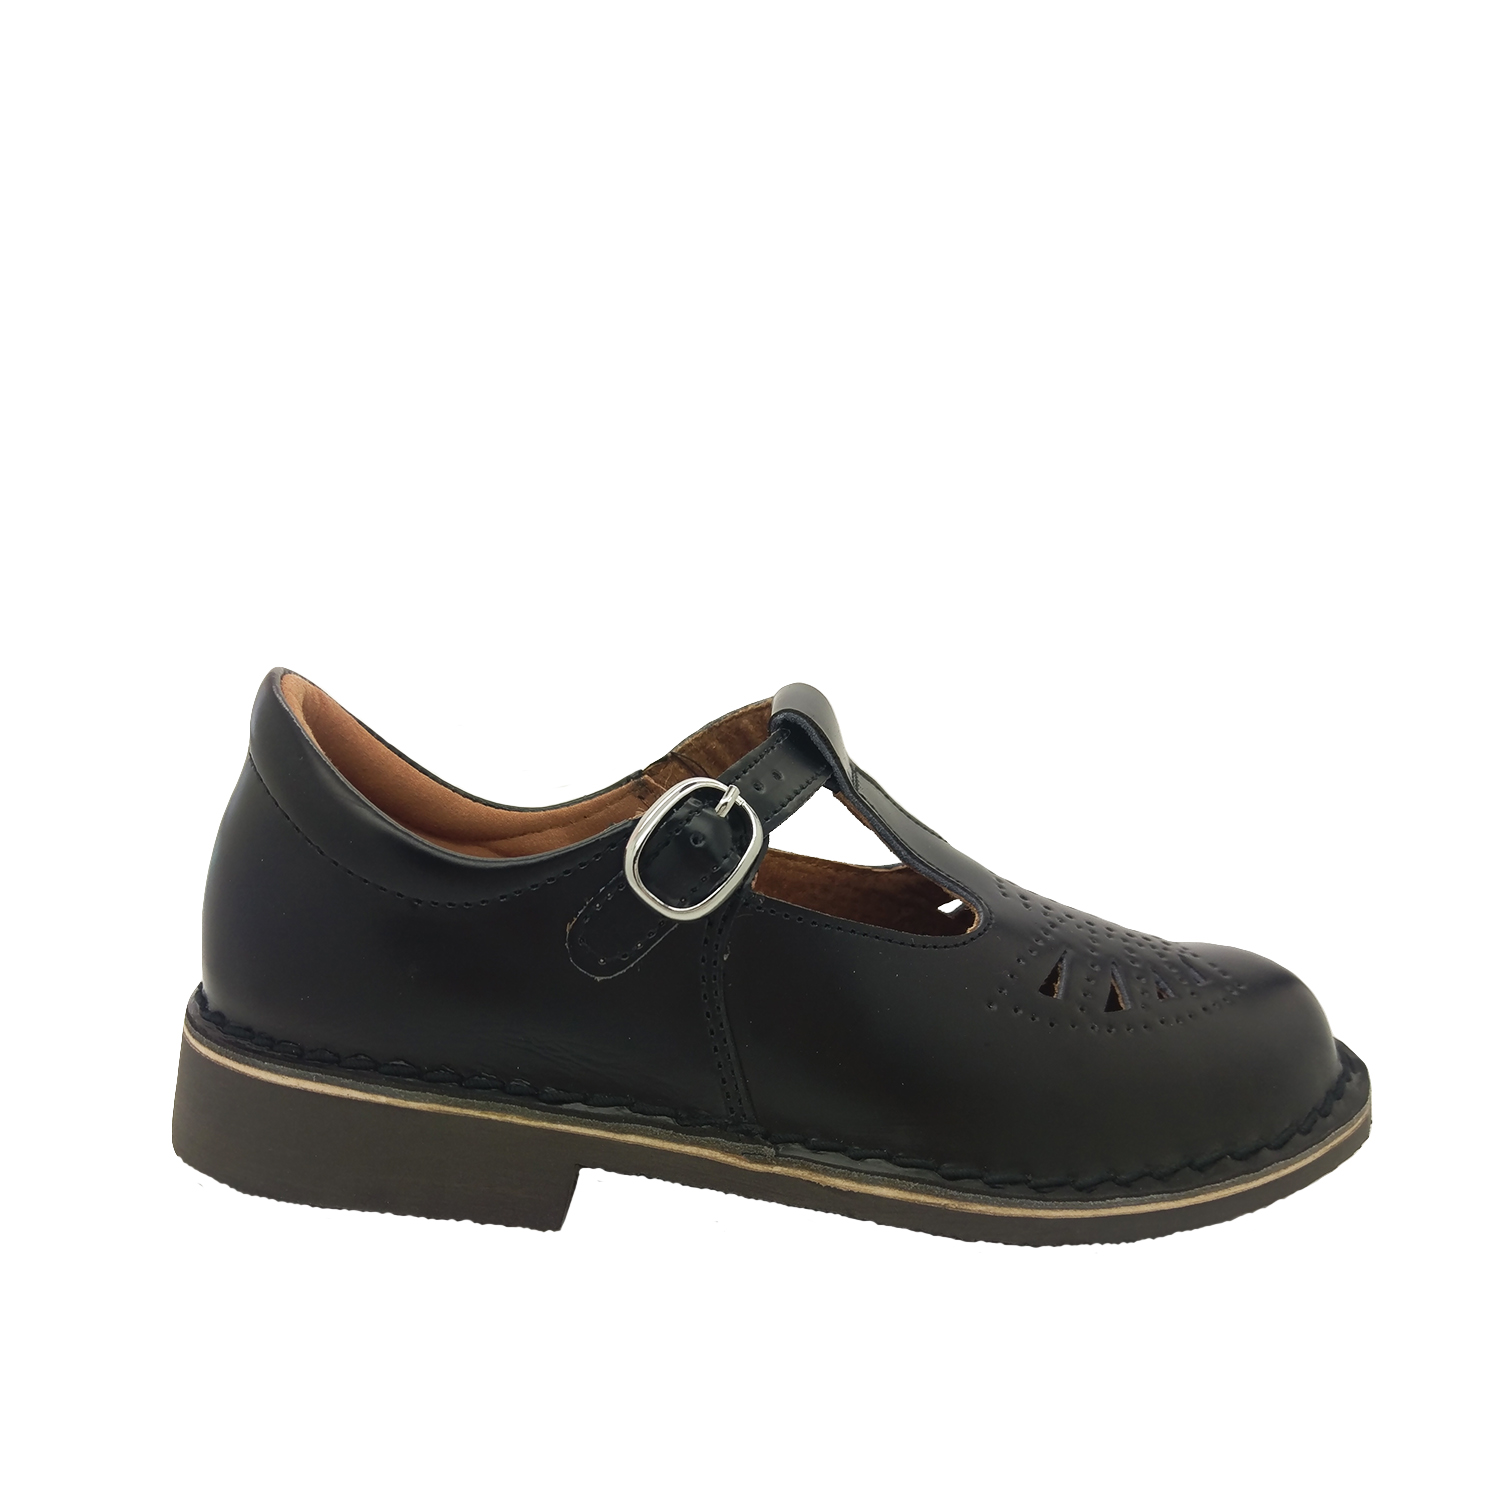 Ladies School Shoes Wilde Jarra Black Leather Wide Fit T-bar Size AU 5 ...